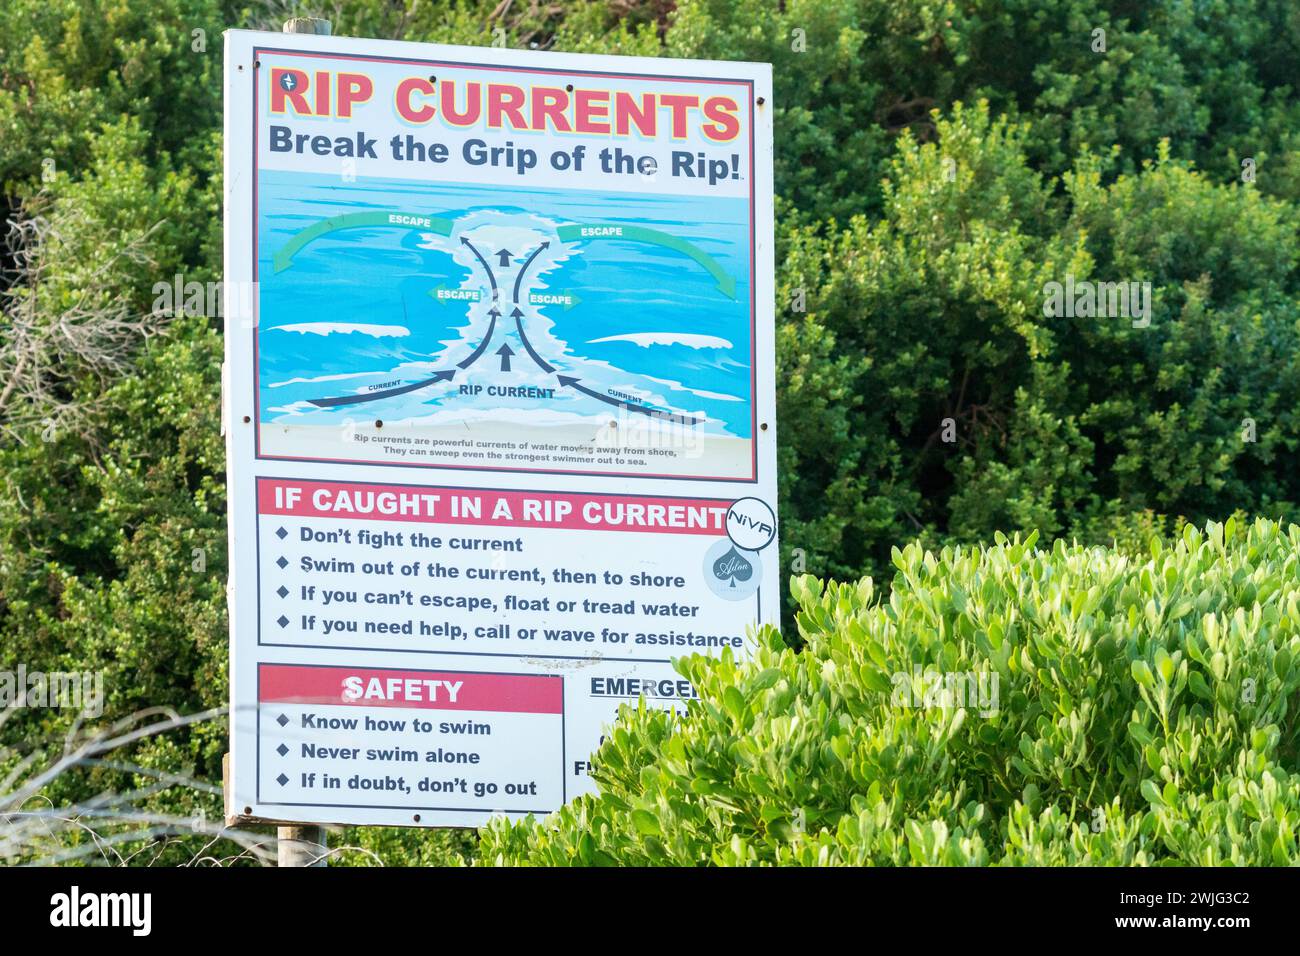 Cartello rip Currents, segnaletica che mostra la sicurezza, informazioni precauzionali come sensibilizzazione del pubblico per il mare, le maree oceaniche in una spiaggia, Capo Occidentale, Sud Africa Foto Stock